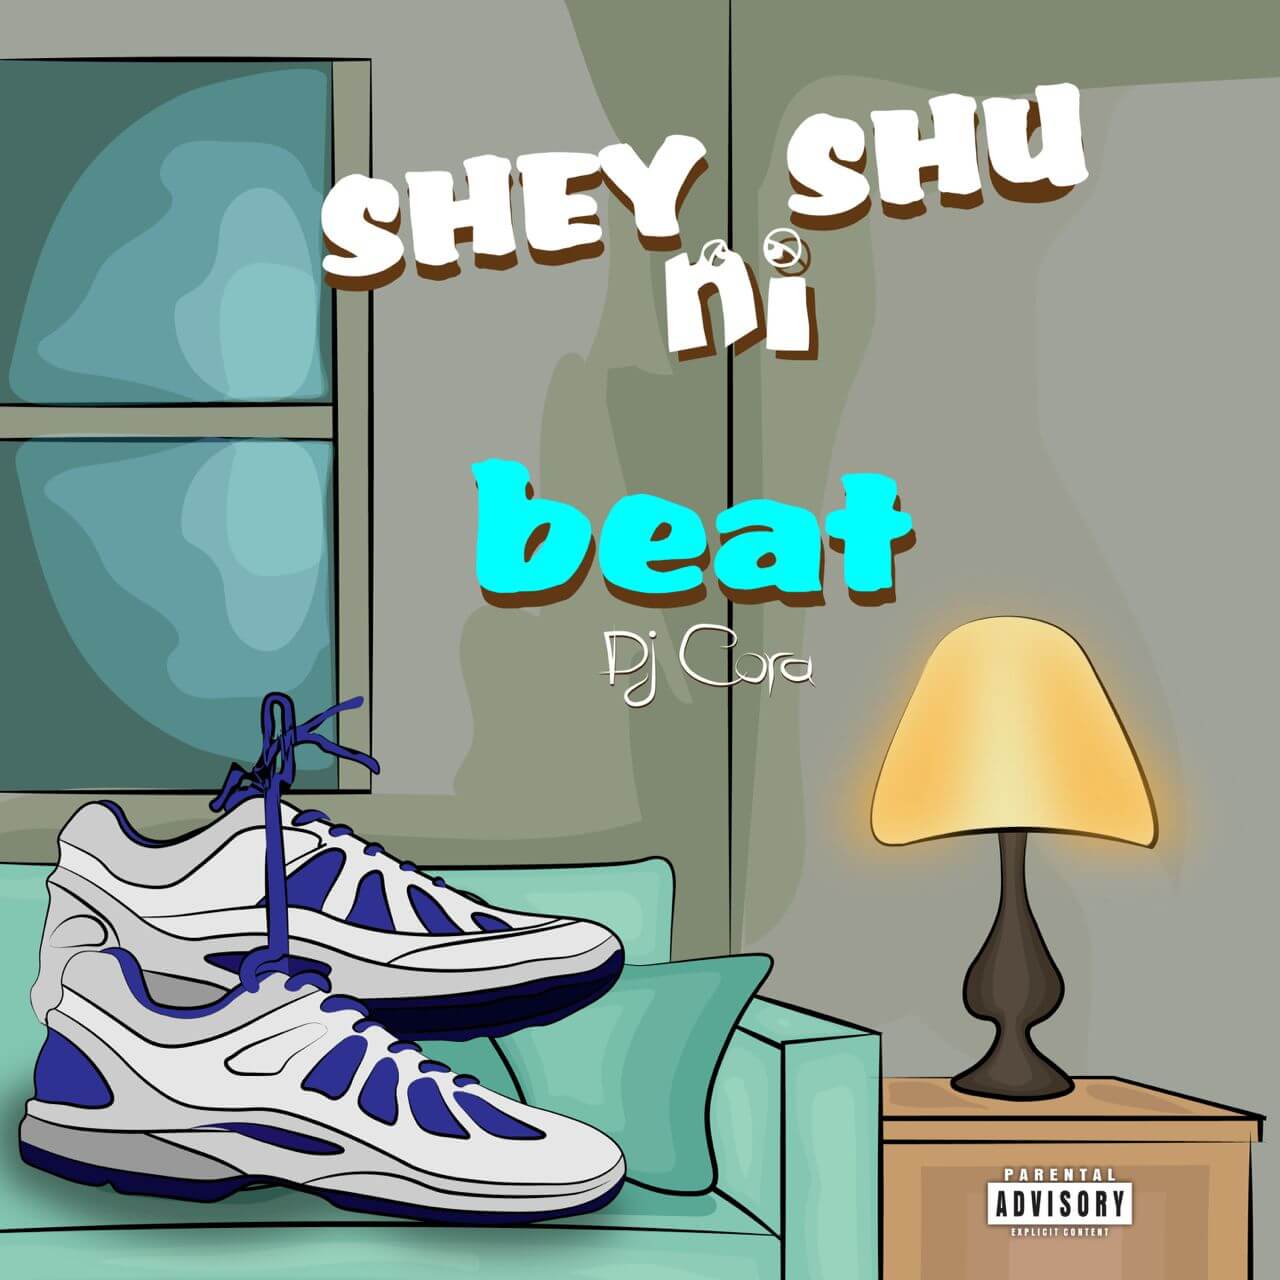 Dj Cora x Don Blu - Shey Shu NI Beat